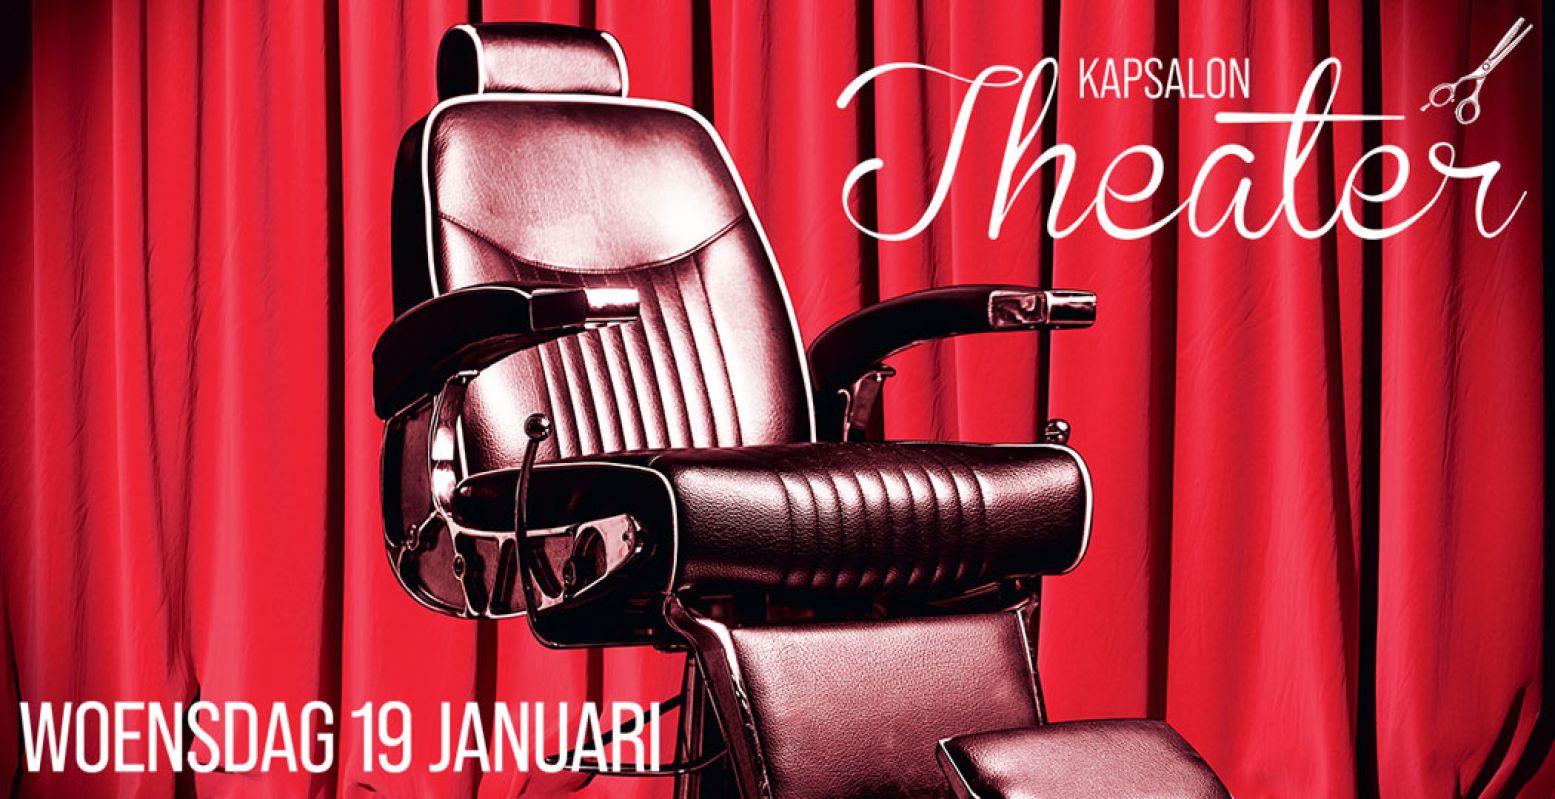 Op woensdag 19 januari kun je in 35 Nederlandse theaters naar de kapper, de schoonheidsspecialiste of de pedicure. Foto: Theater Kapsalon